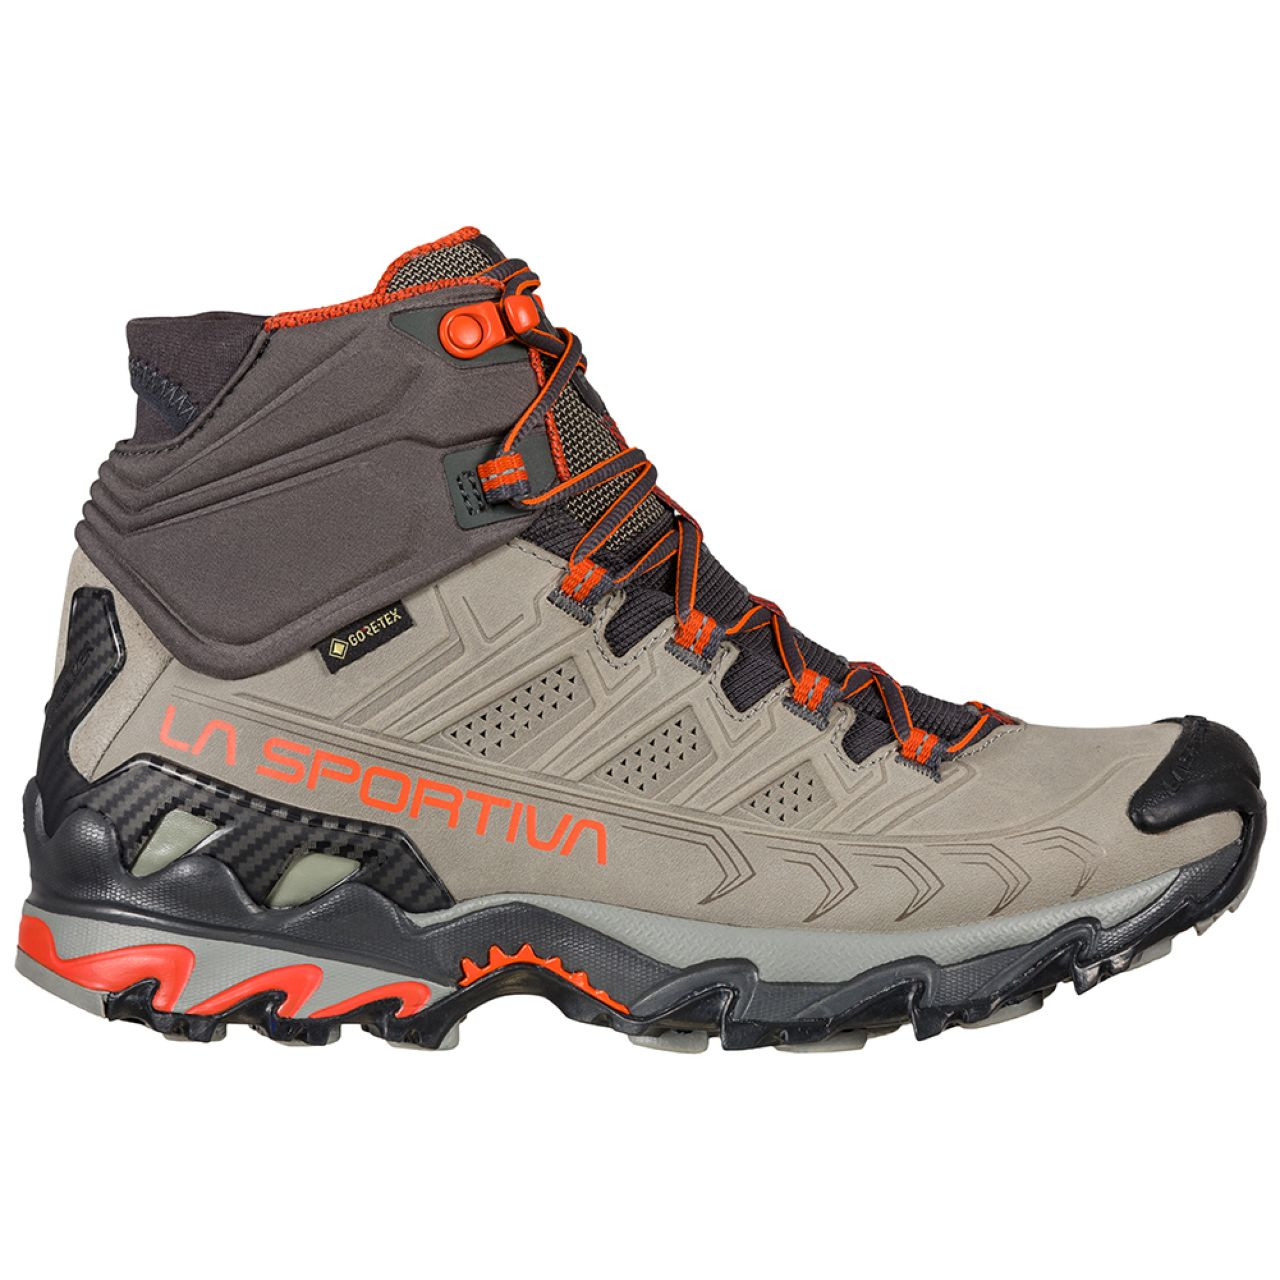 La Sportiva North America - Shop for Hiking Boots